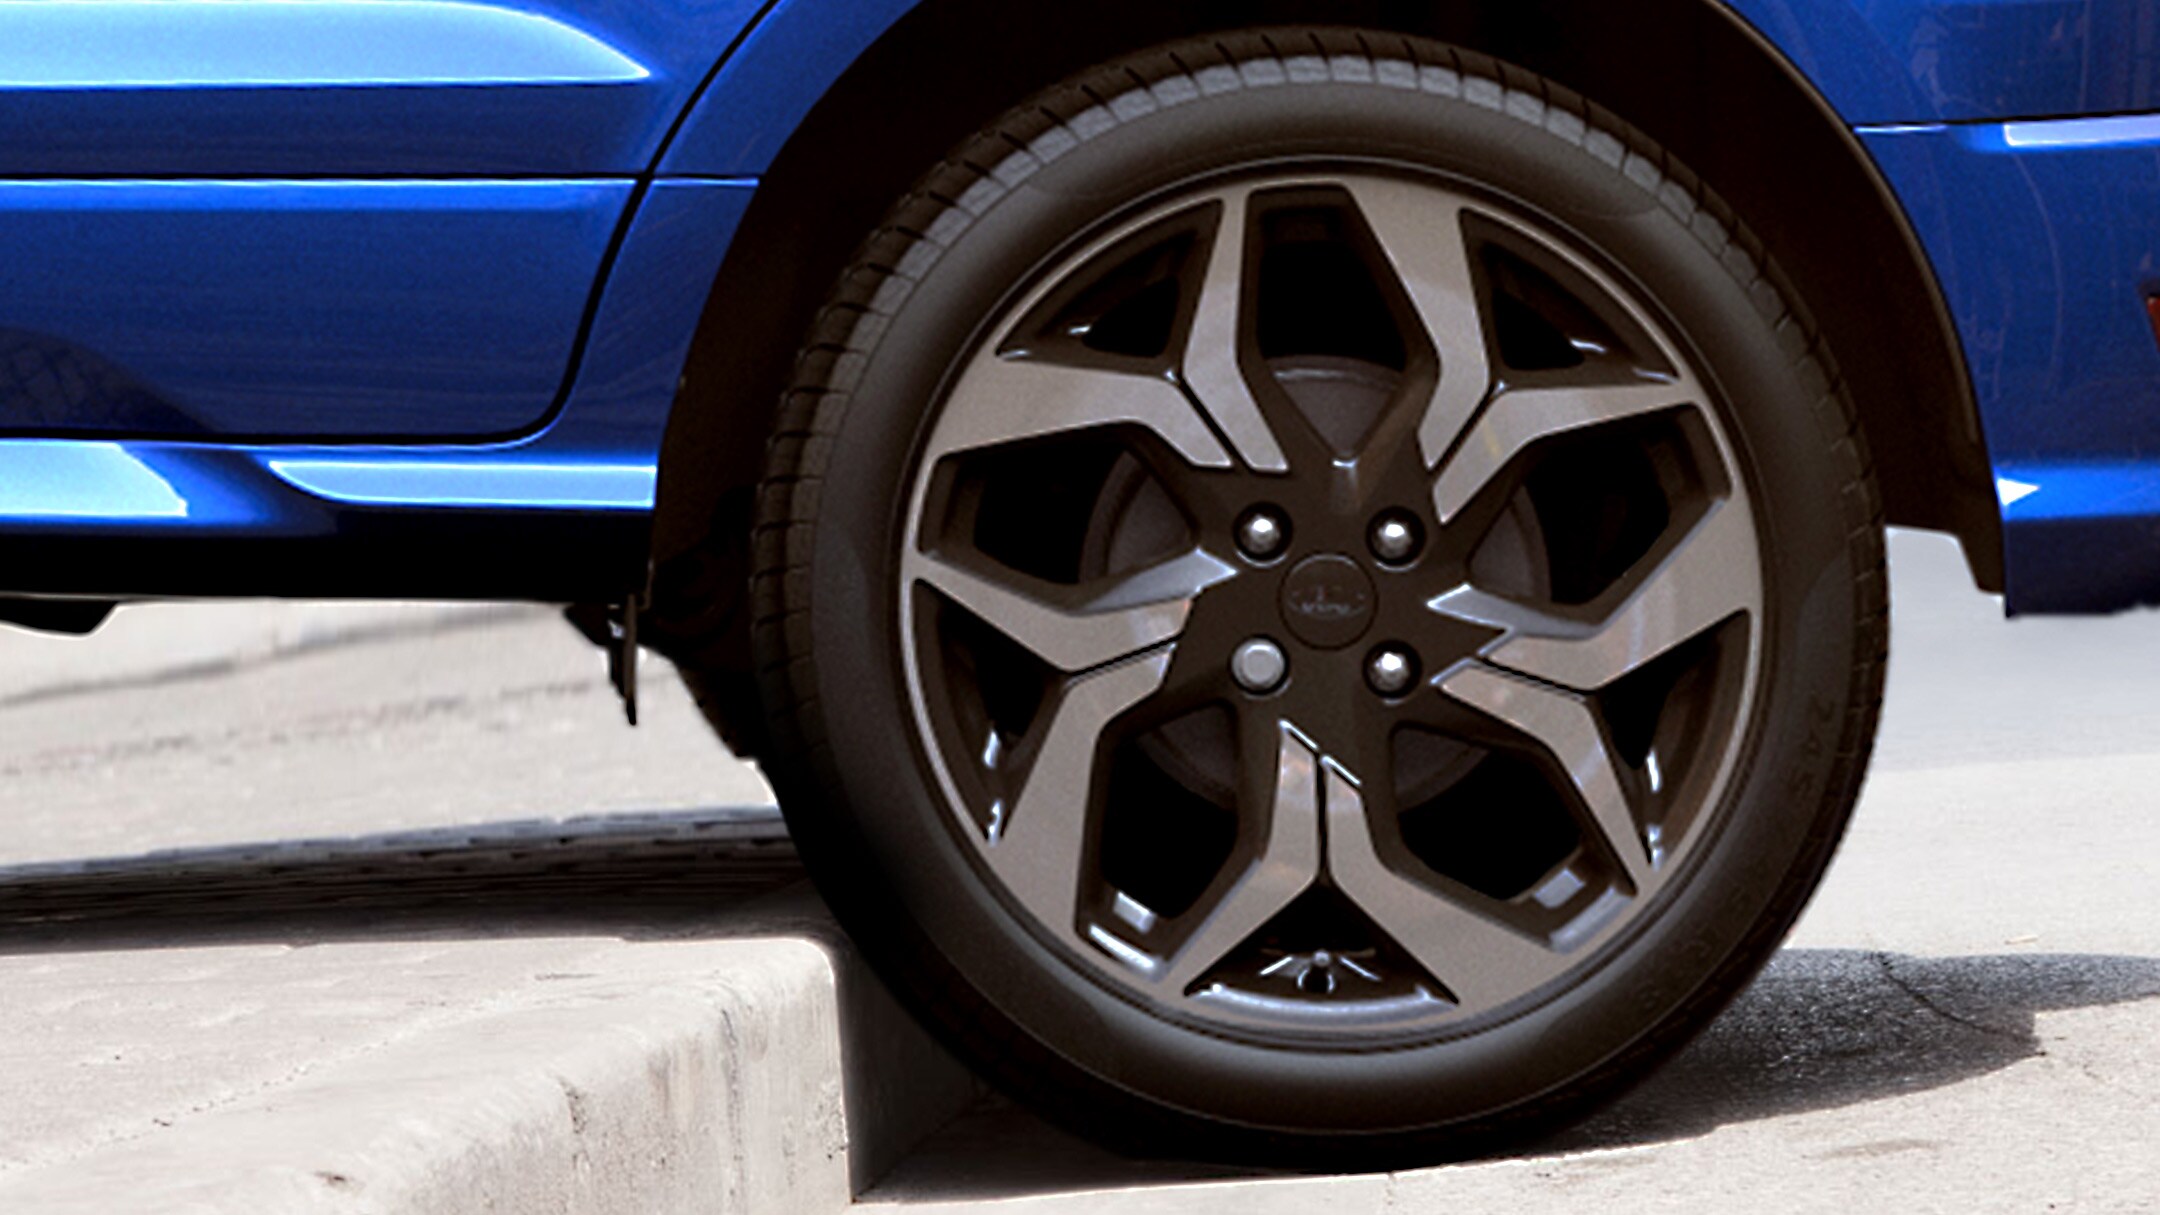 Blue Ford EcoSport rear wheel mounting high kerb